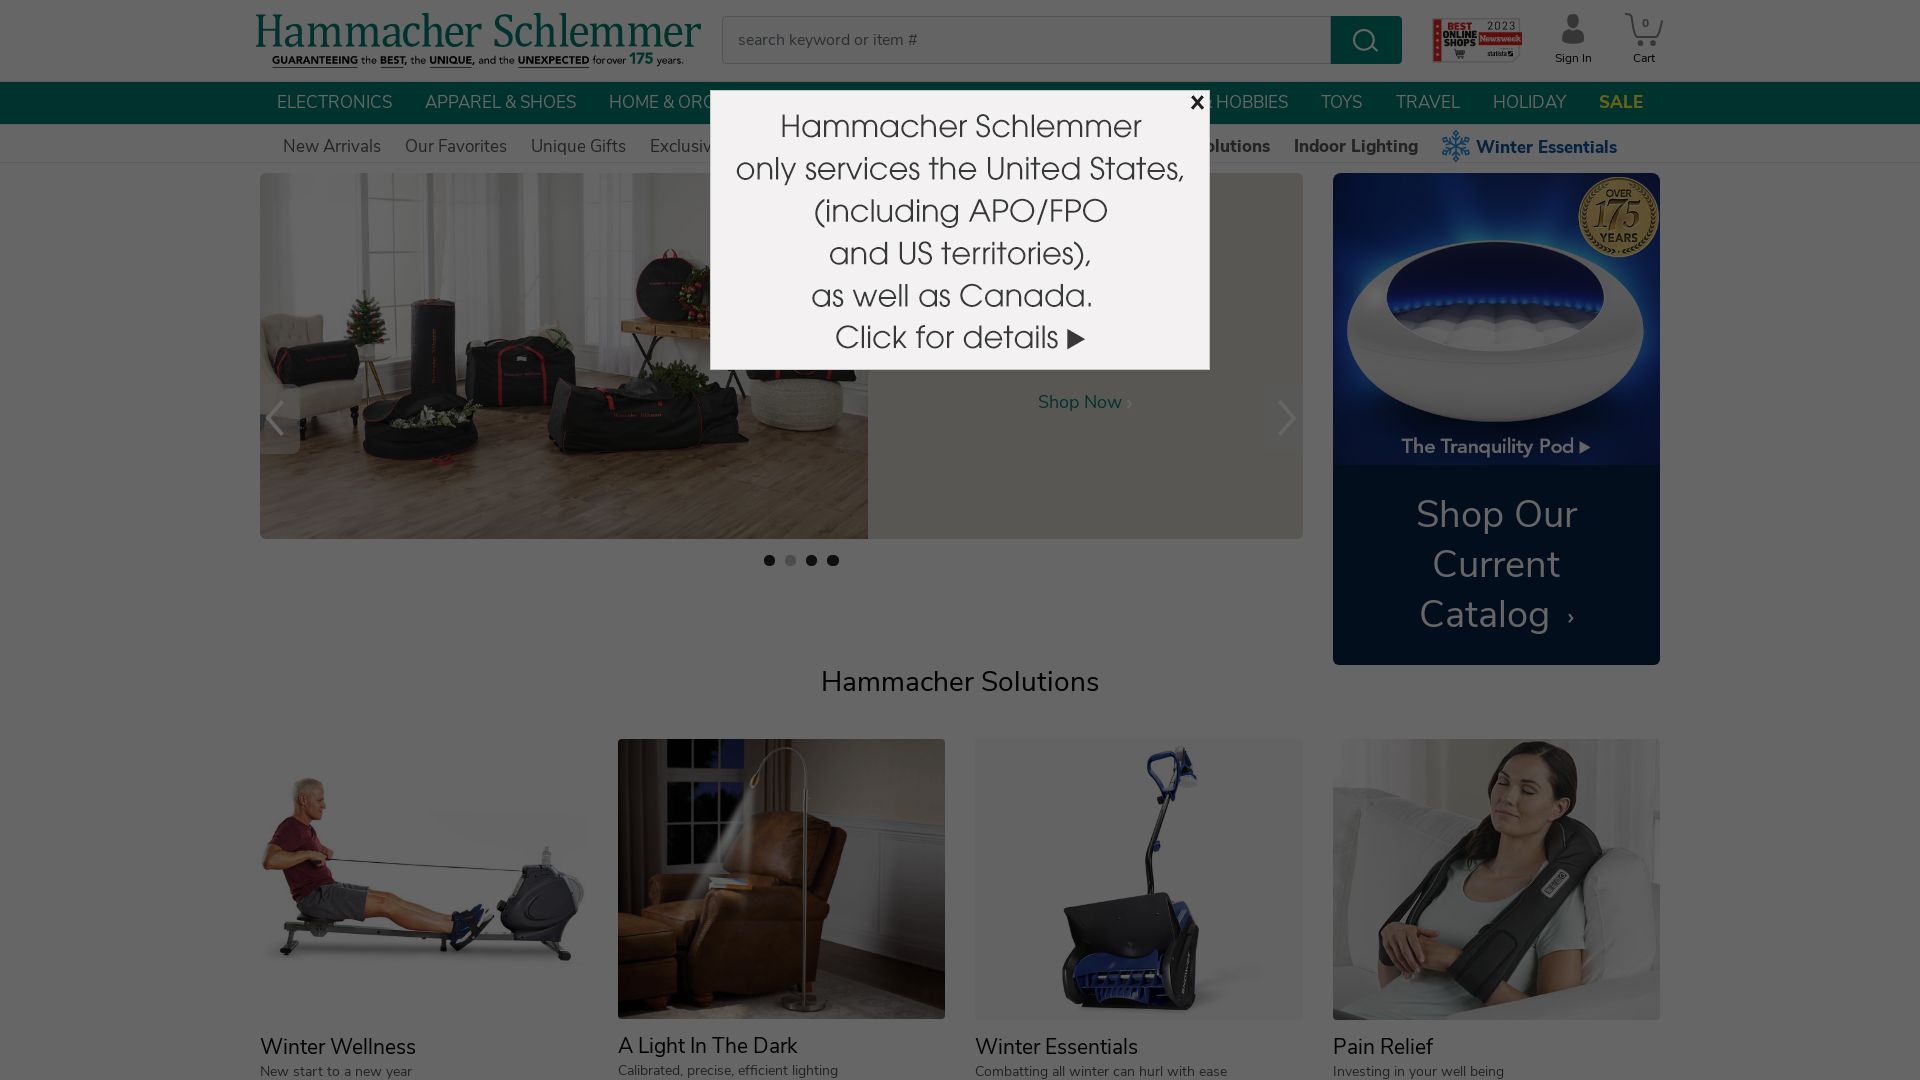 Estado web hammacher.com está   ONLINE